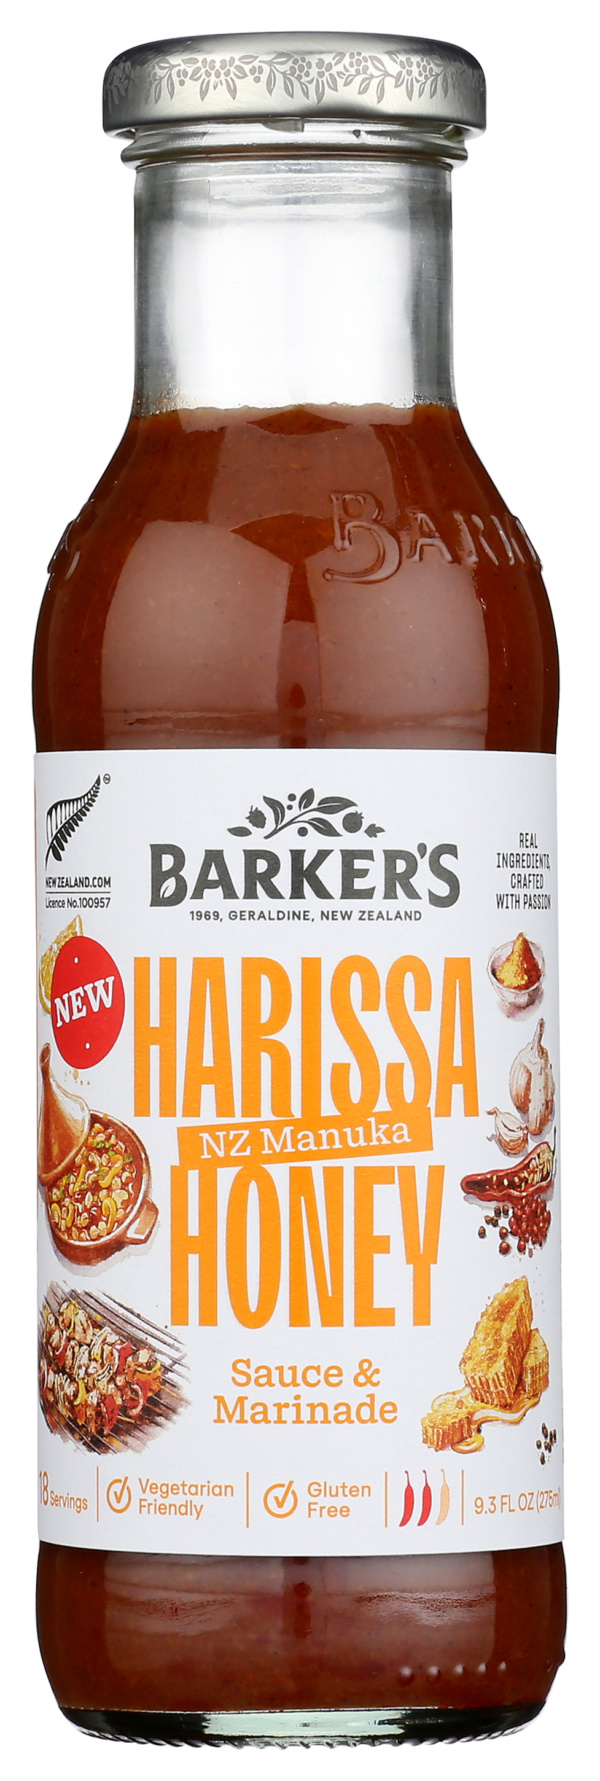 Harissa Honey Sauce & Marinade